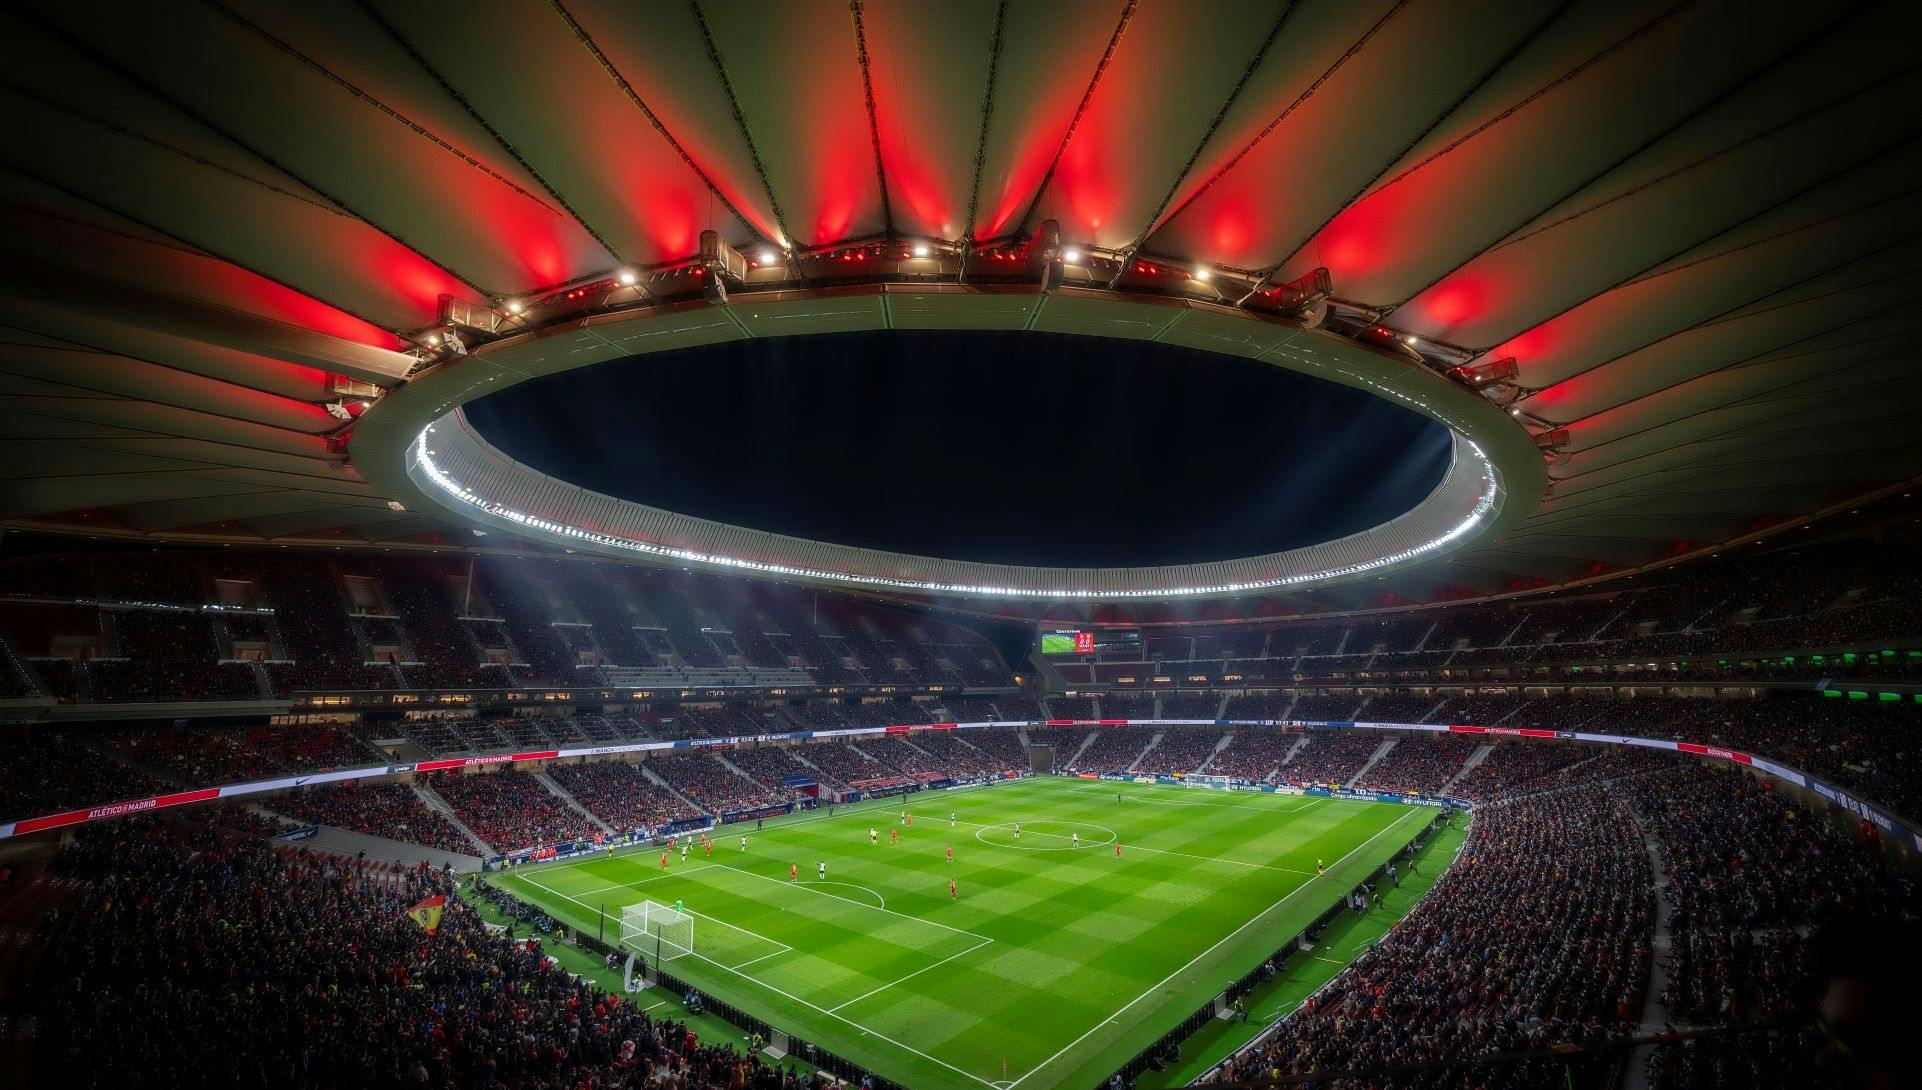 Billets pour le musée de l'Atlético de Madrid et visite du stade